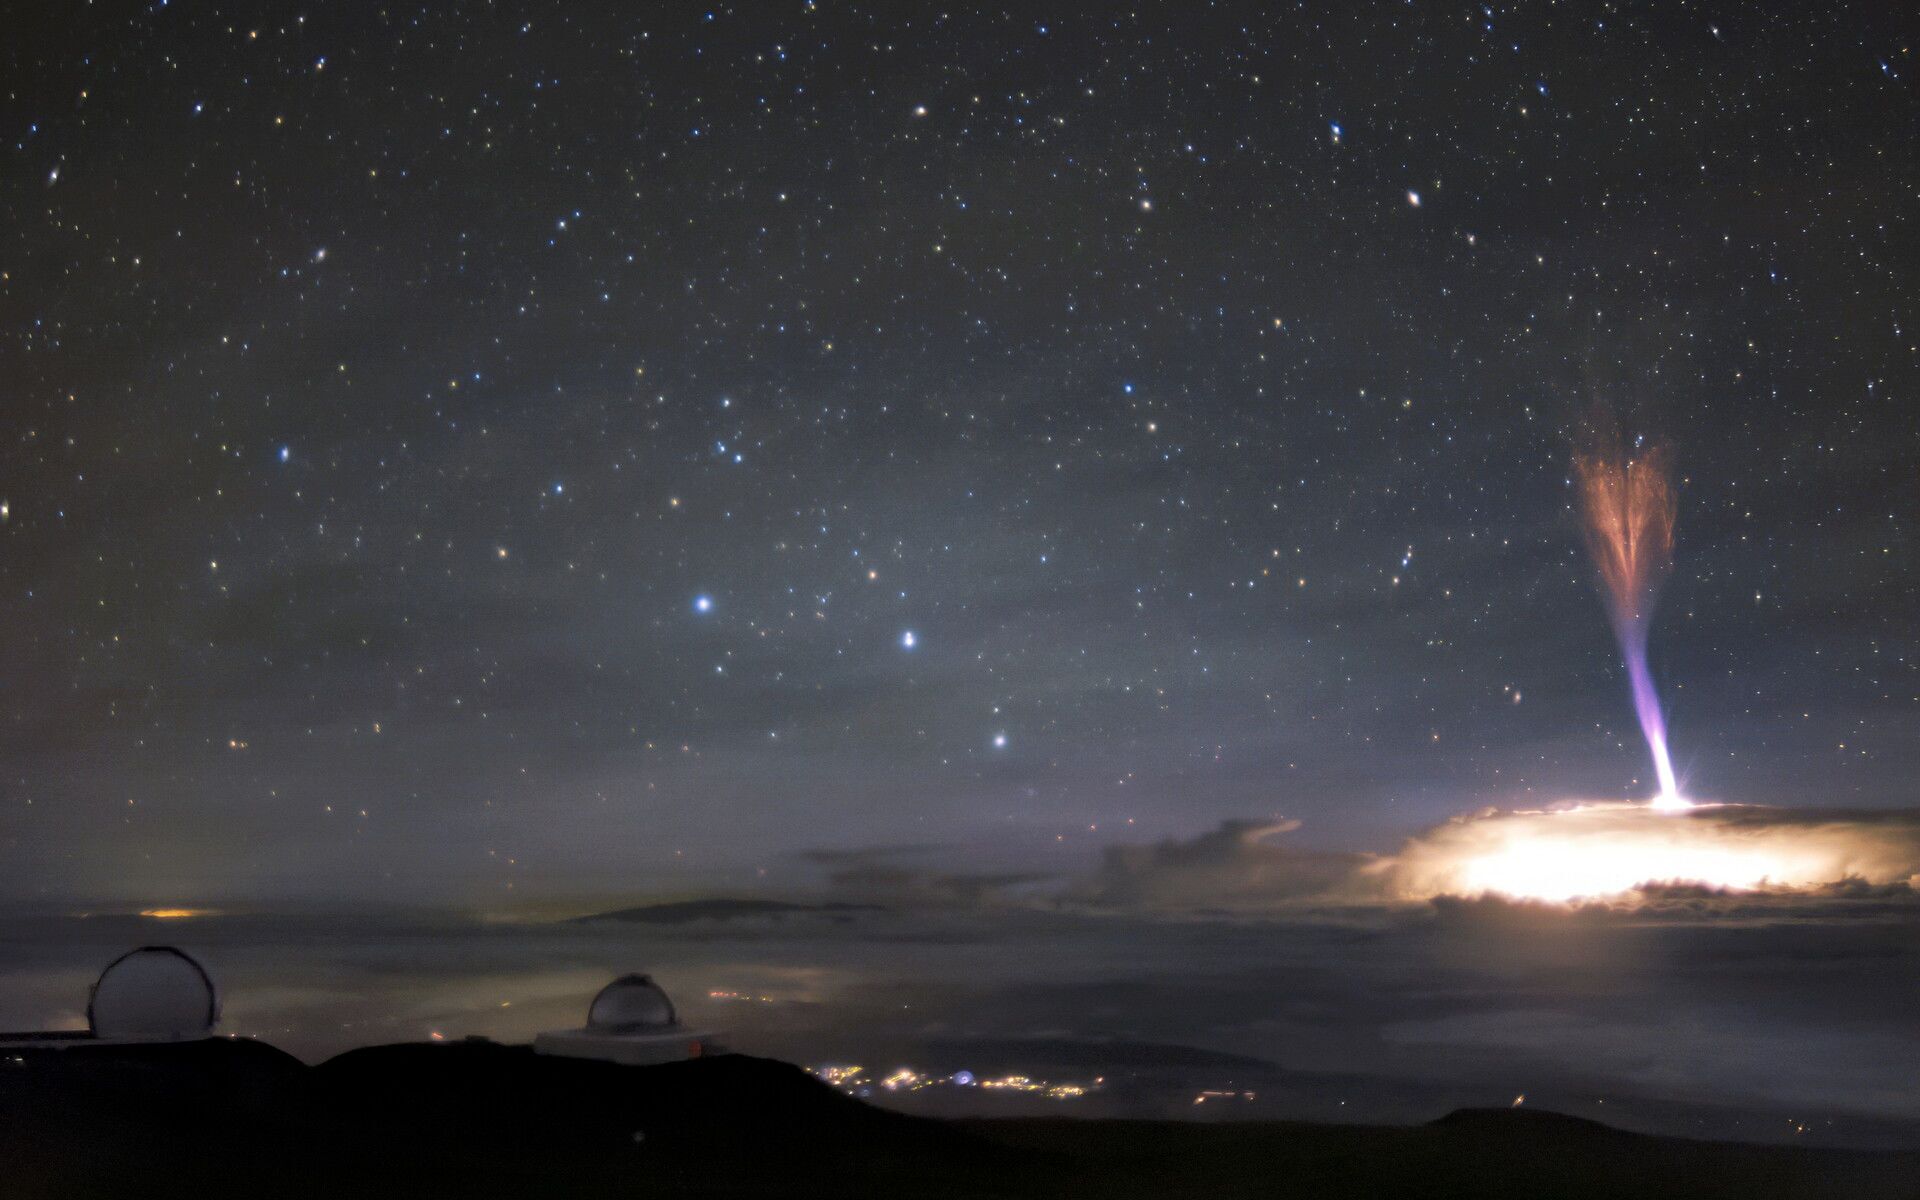 Observatório capta FOTO de 2 fenômenos atmosféricos incríveis no céu de Havaí - Sputnik Brasil, 1920, 27.02.2021